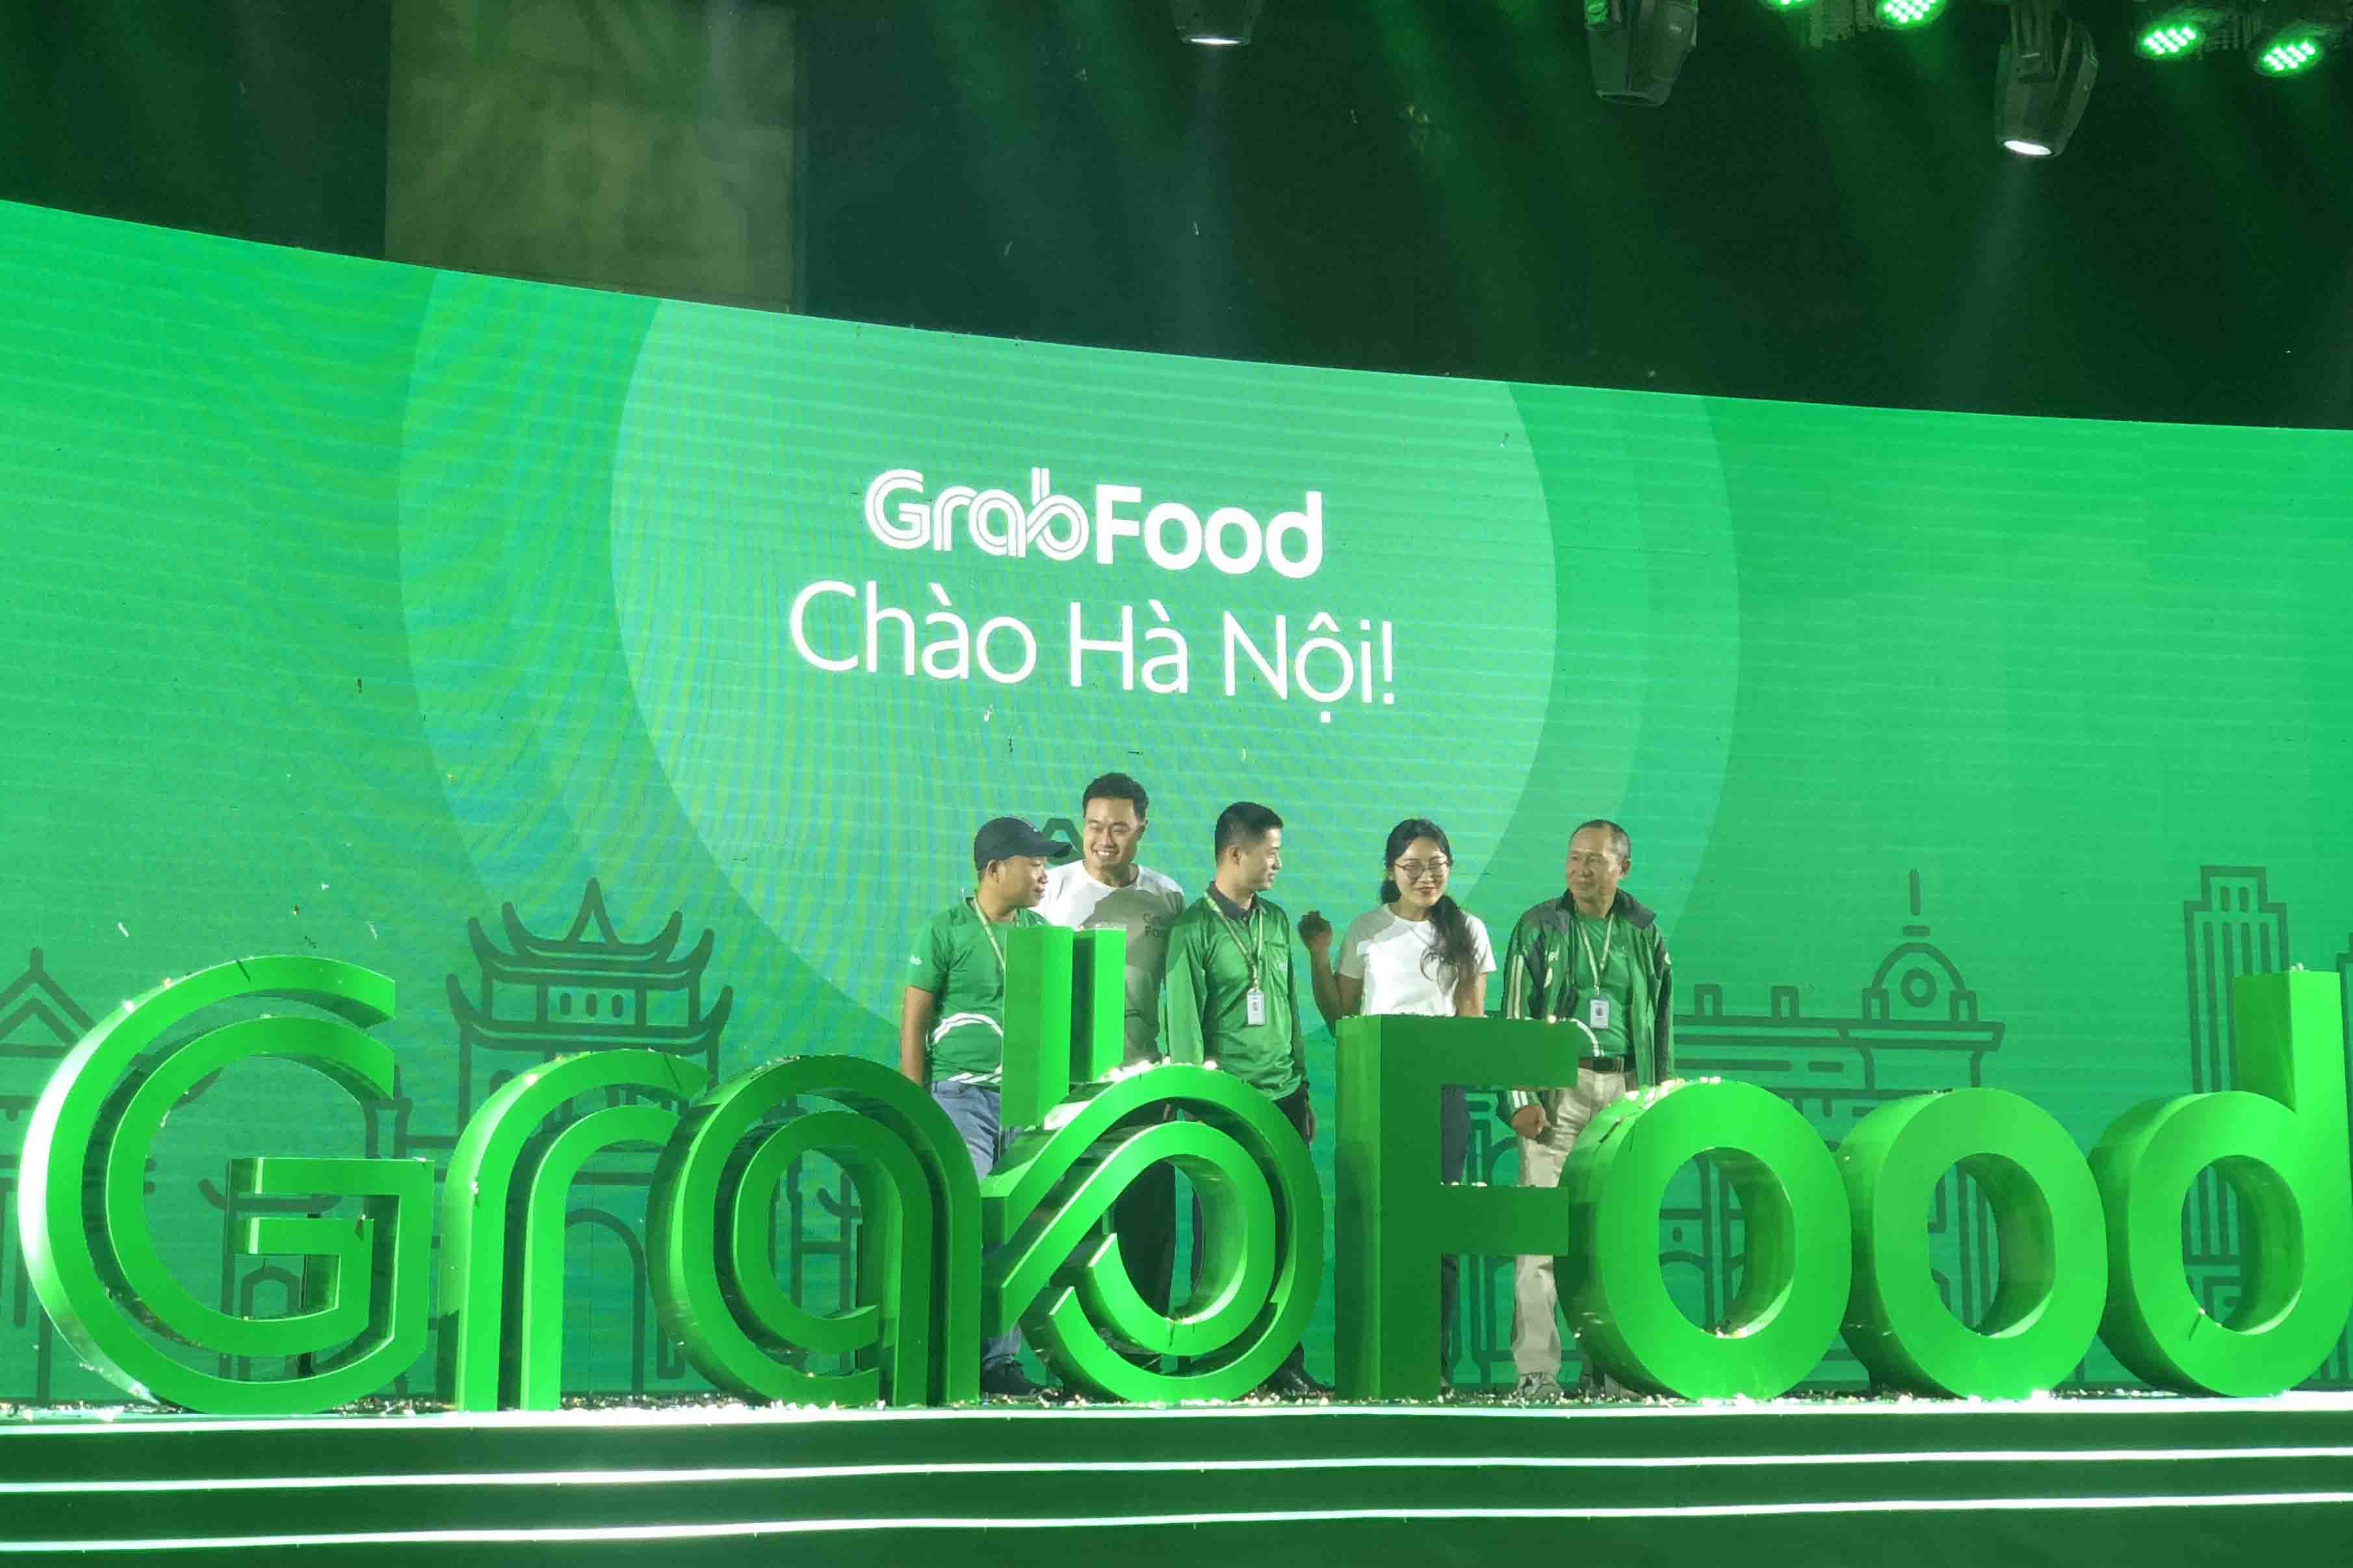 Dịch vụ giao nhận thức ăn GrabFood chính thức có mặt tại Hà Nội • TECHTIMES